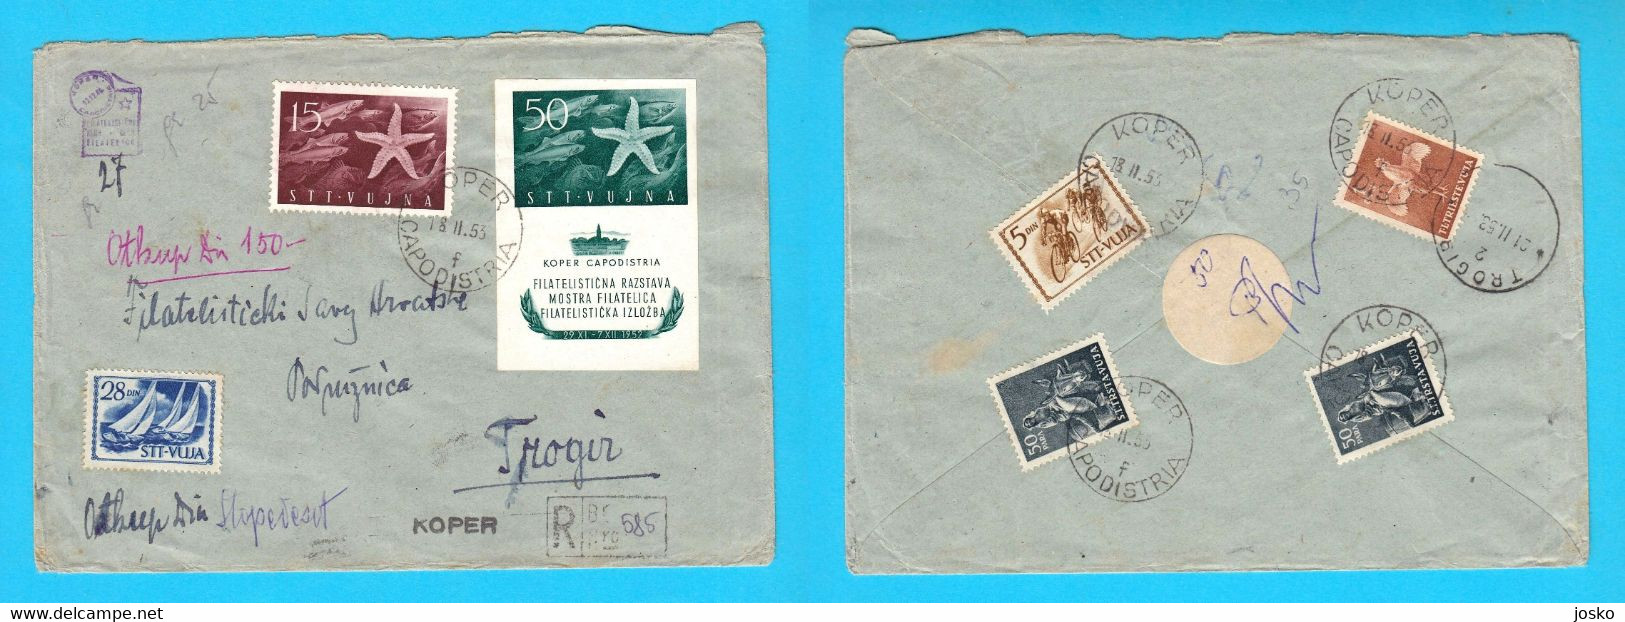 TRIESTE ZONA B STT VUJNA VUJA Registered Letter Travelled 1953 Koper Capodistria Yugoslavia Slovenia Istria Italy Italia - Marcofilie